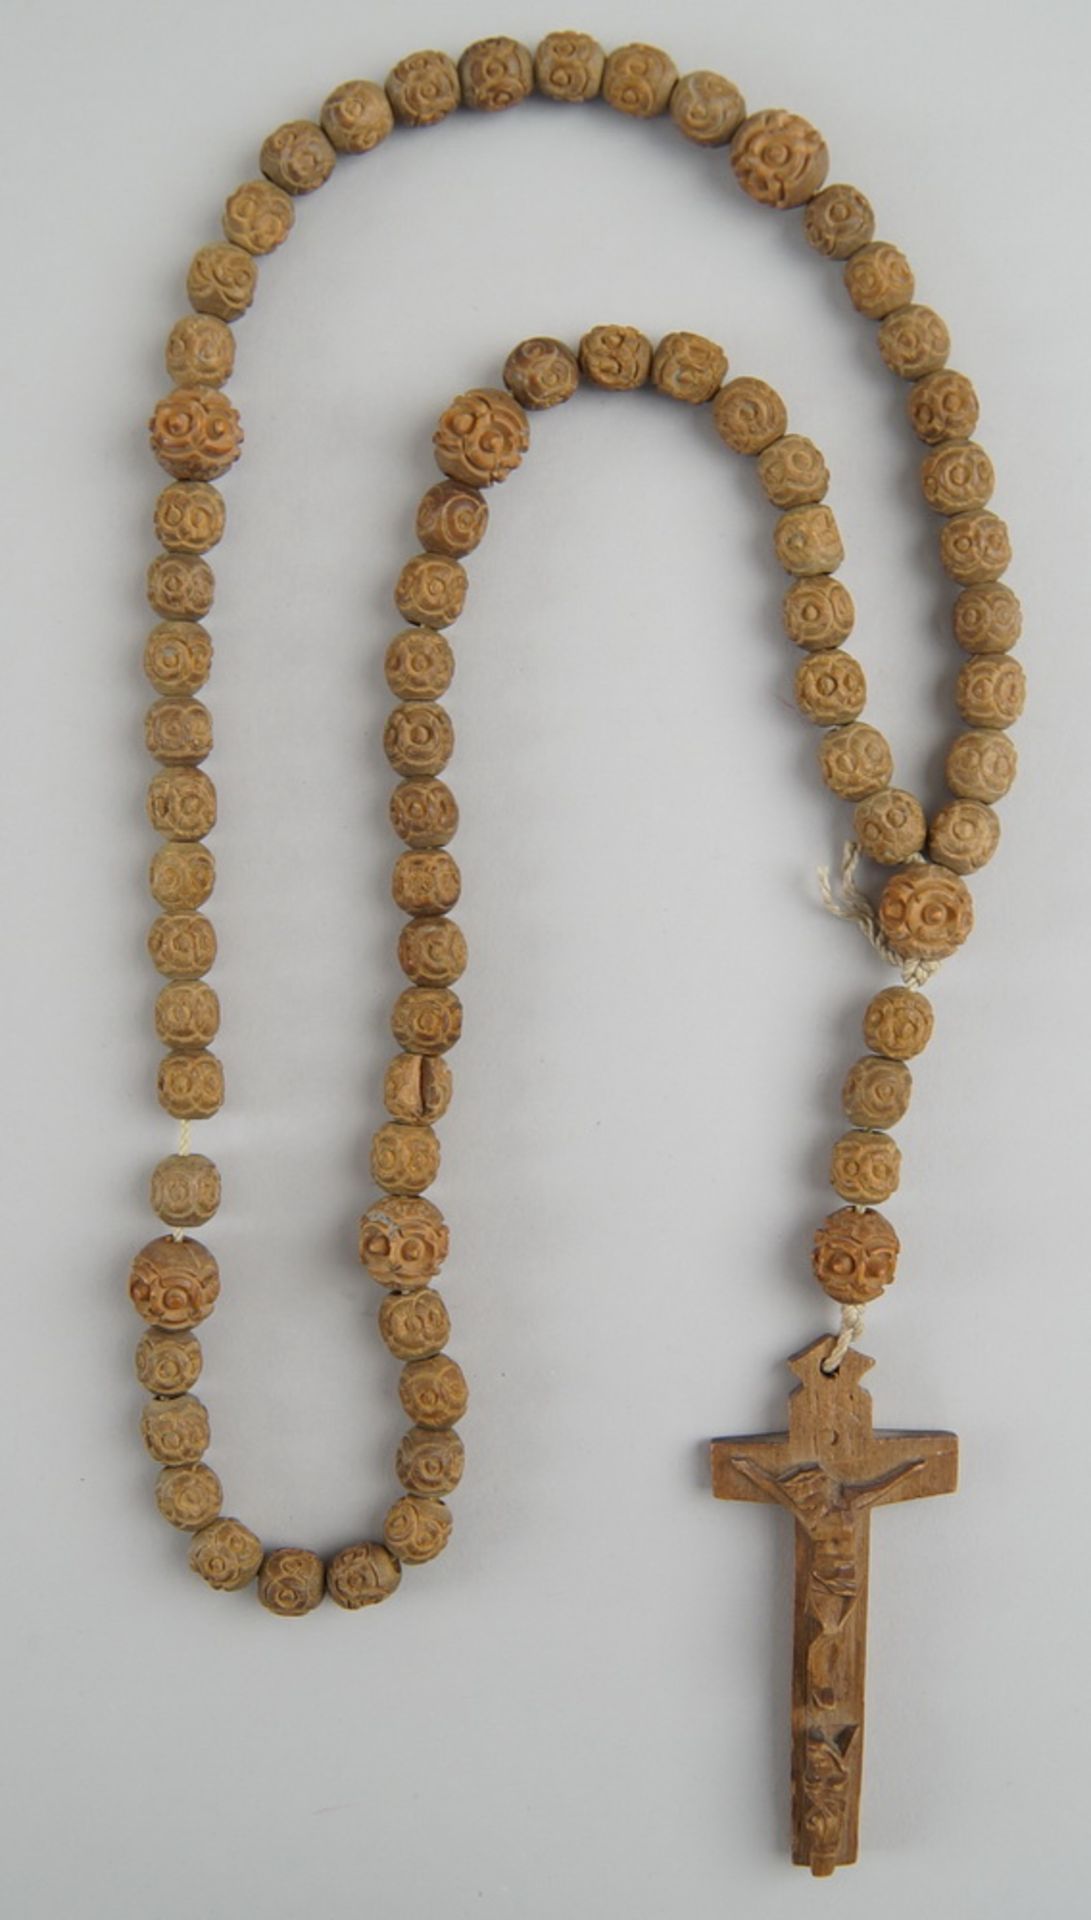 Rosenkranz aus fein geschnitzten Perlen und Holzkreuz, Altersspuren, L 52cm - Bild 2 aus 3